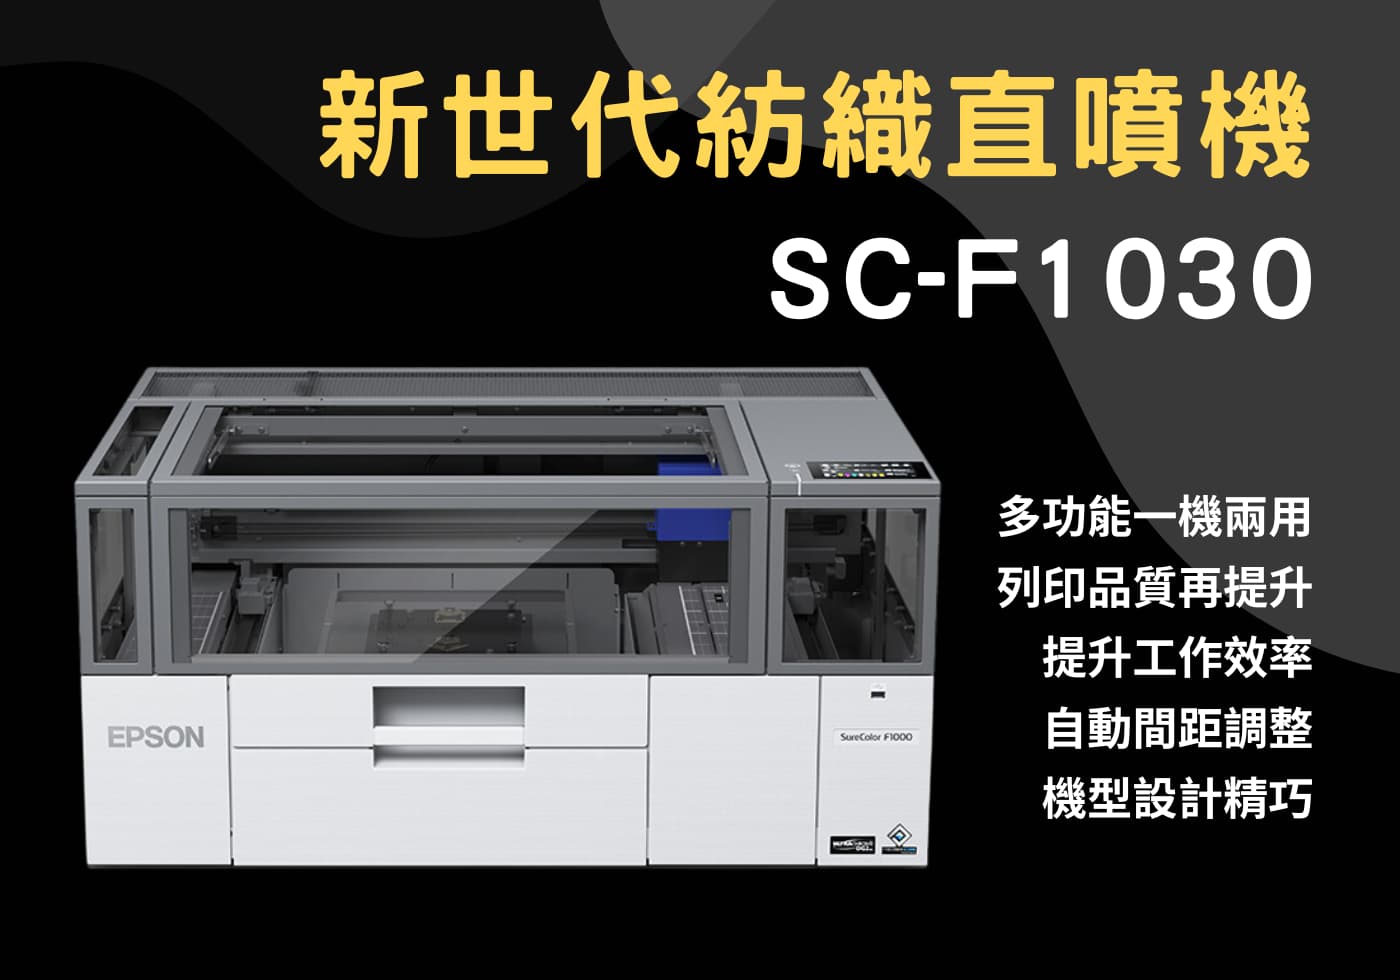 閱讀更多文章 新世代紡織直噴機SC-F1030，微型文創者都想了解的印刷設備